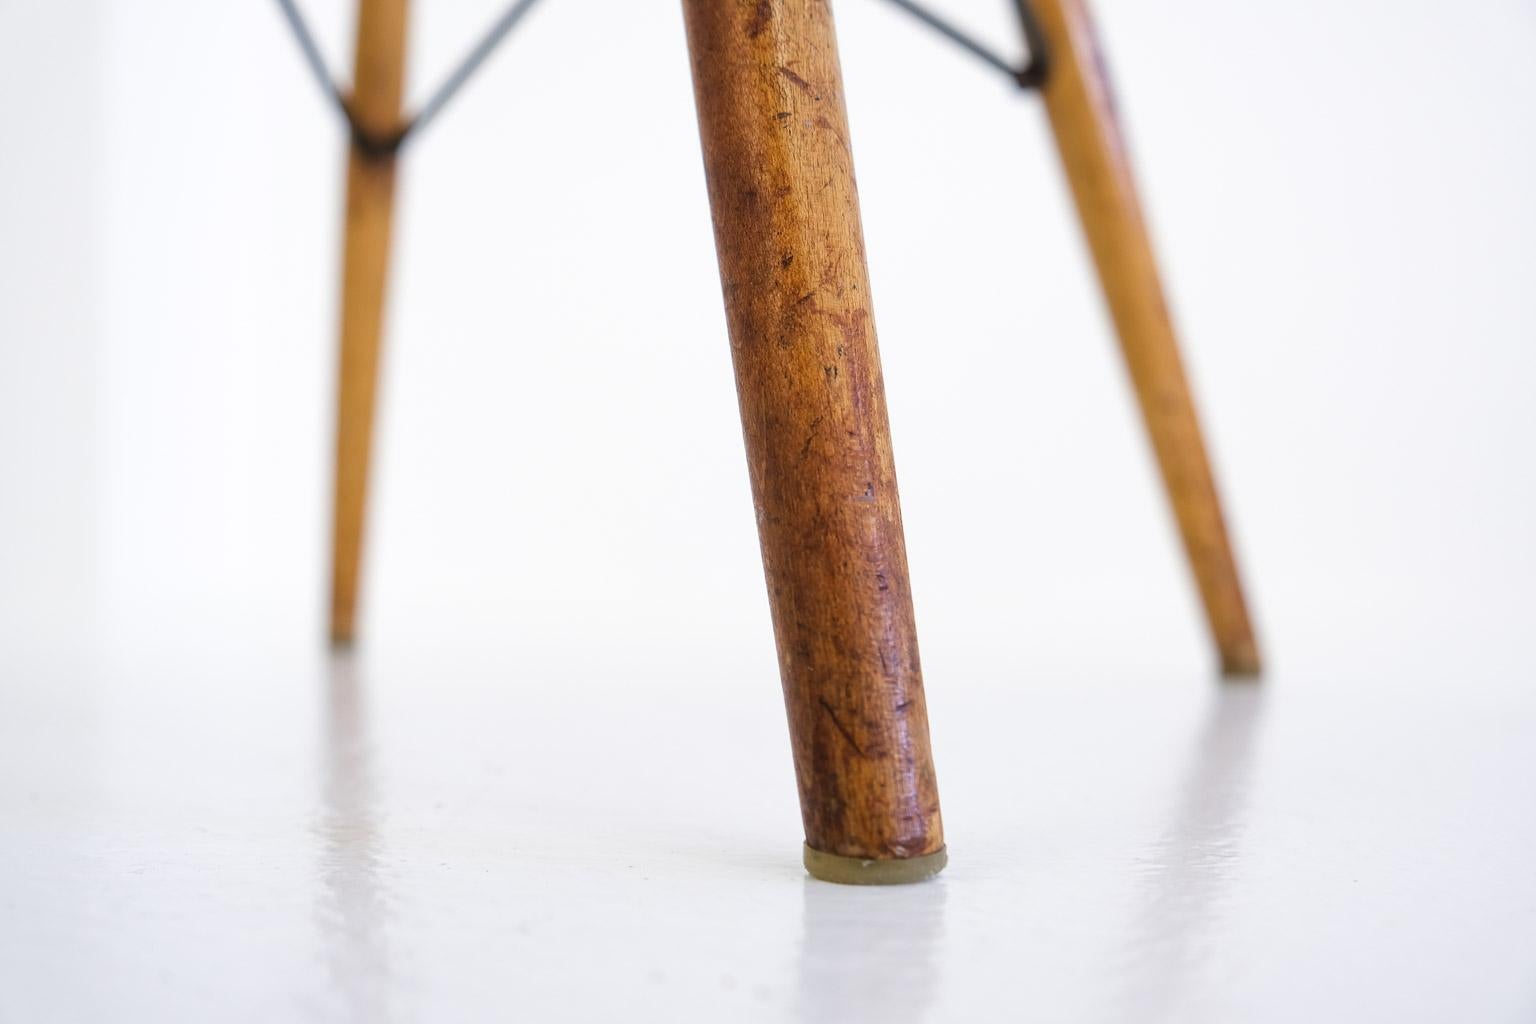 Pkw-2 Pivoting K-Wire Wood Base Side Chair, Eames Herman Miller, Bikini, Seng For Sale 3